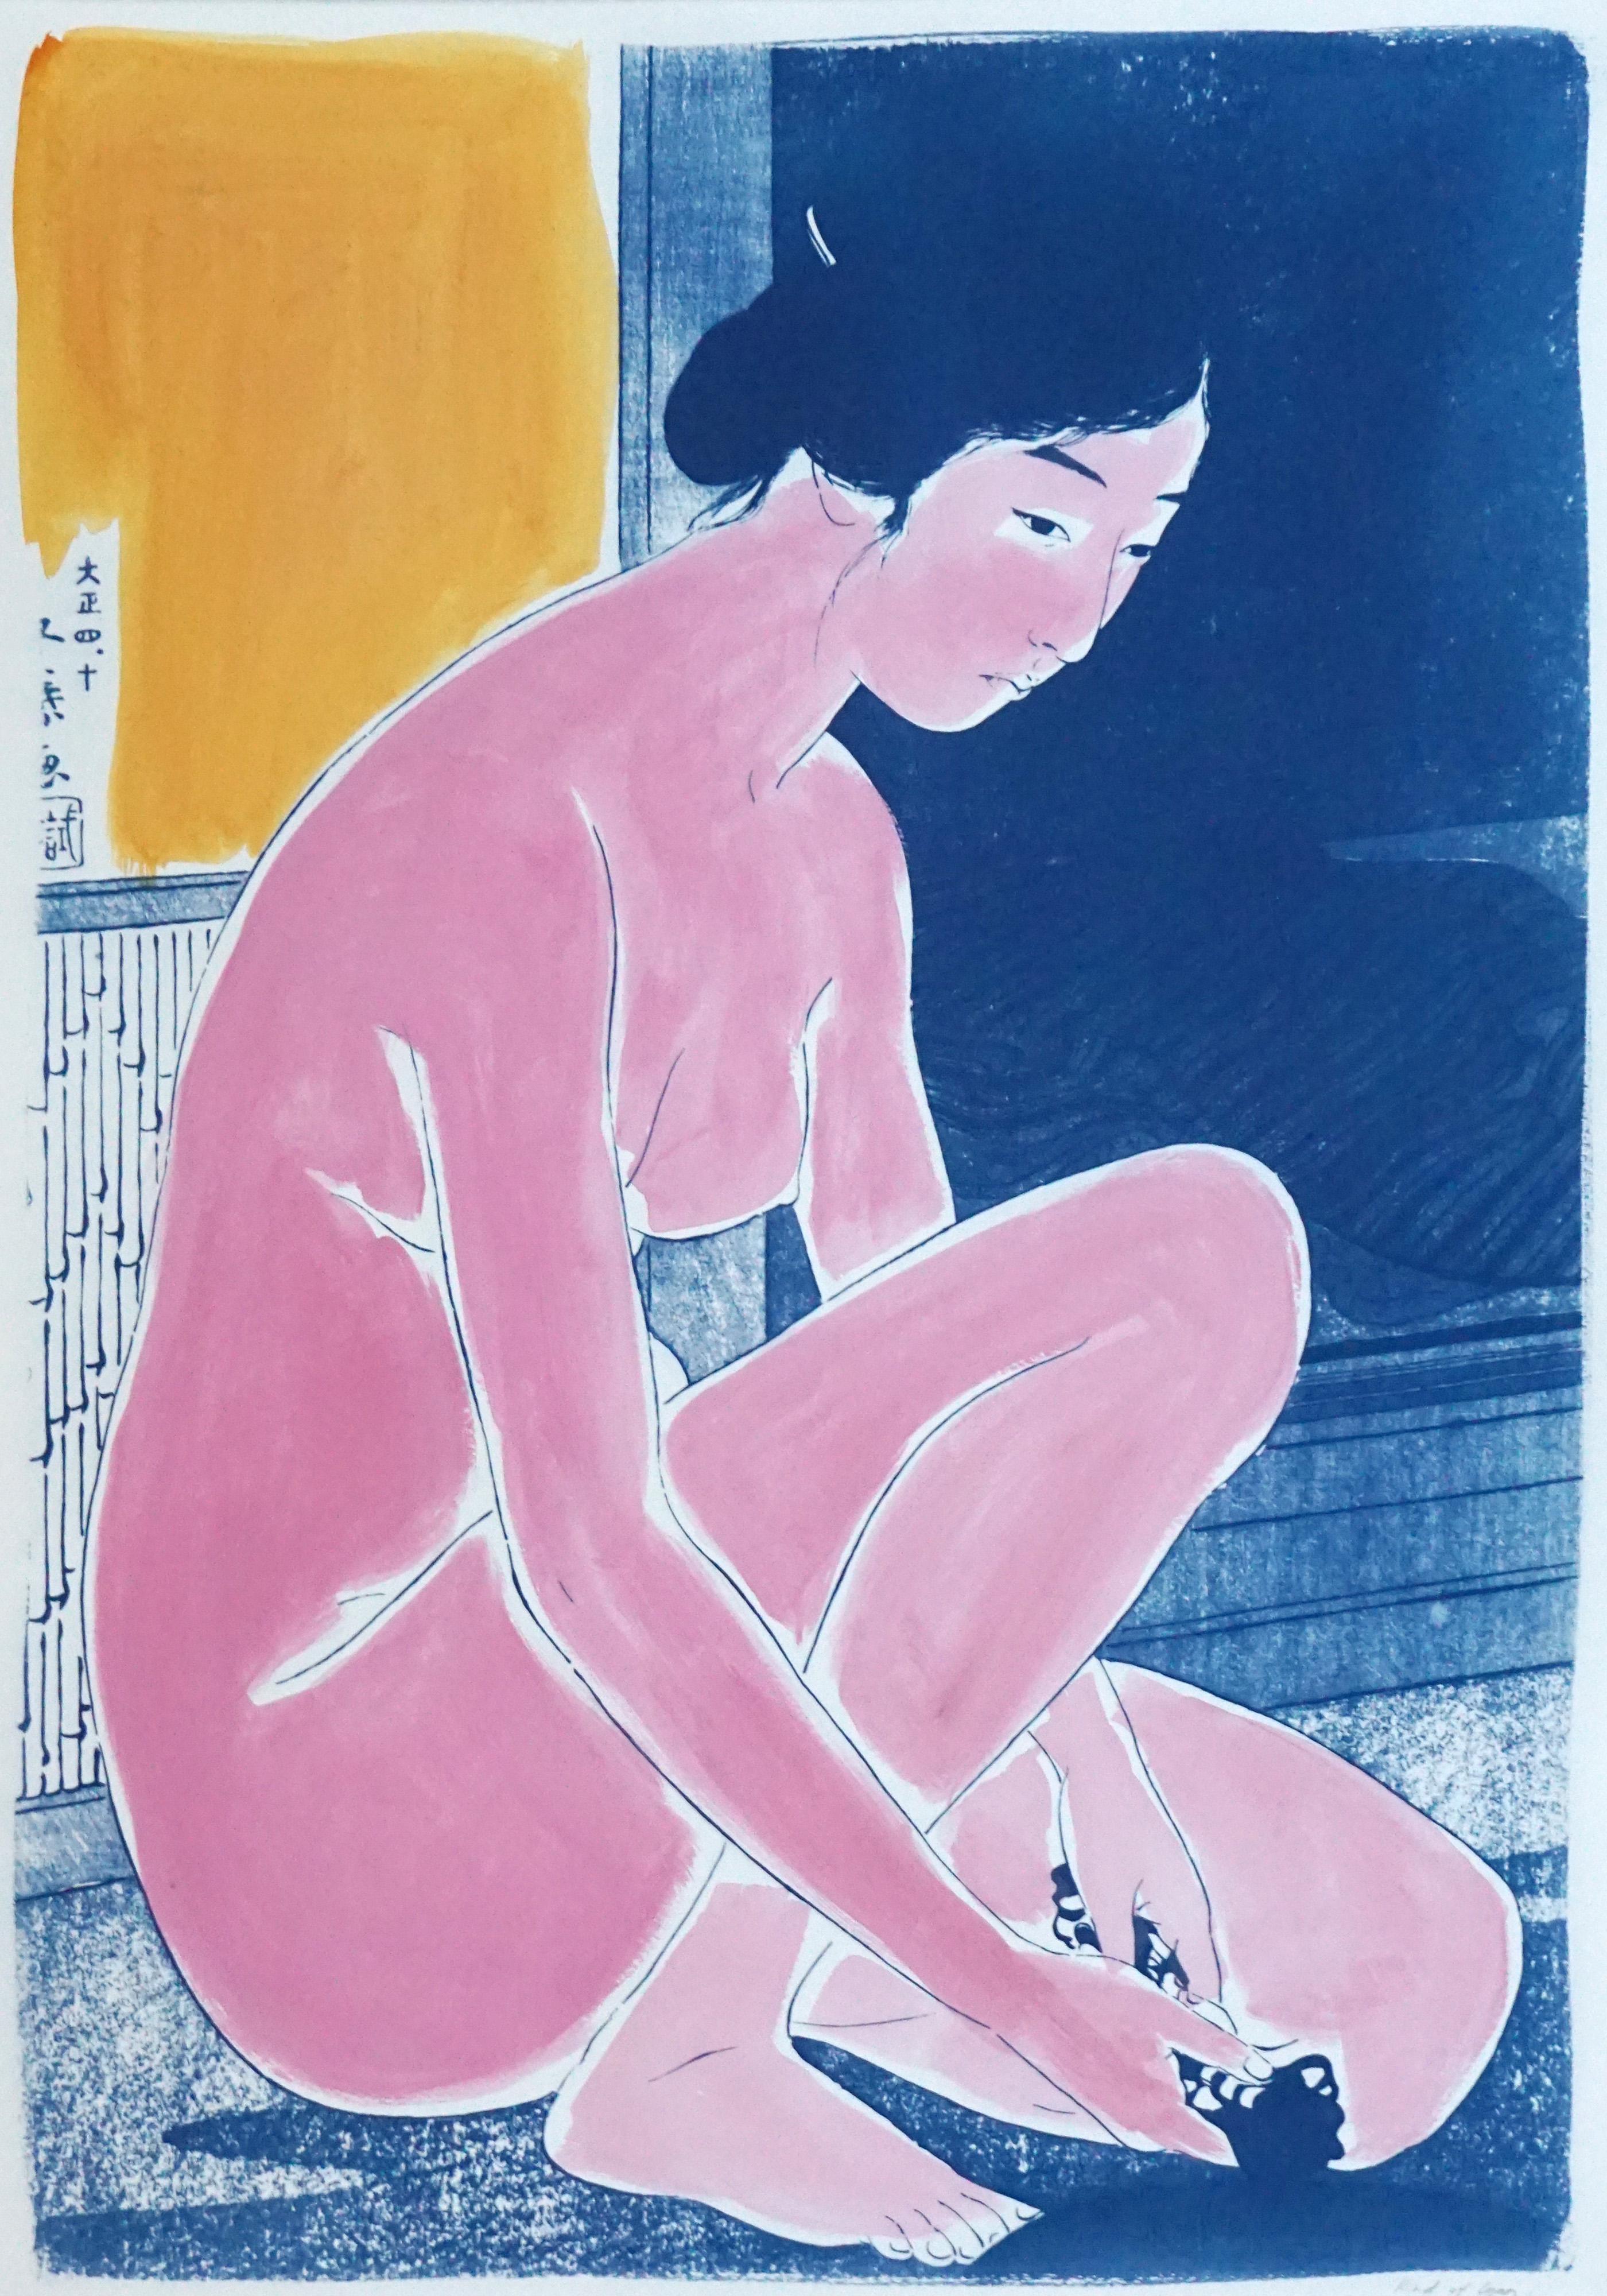 Kind of Cyan Nude Print - Hashiguchi Goyo Inspired Ukiyo-e, Nude Cyanotype, Handmade Painting Touch, 2021